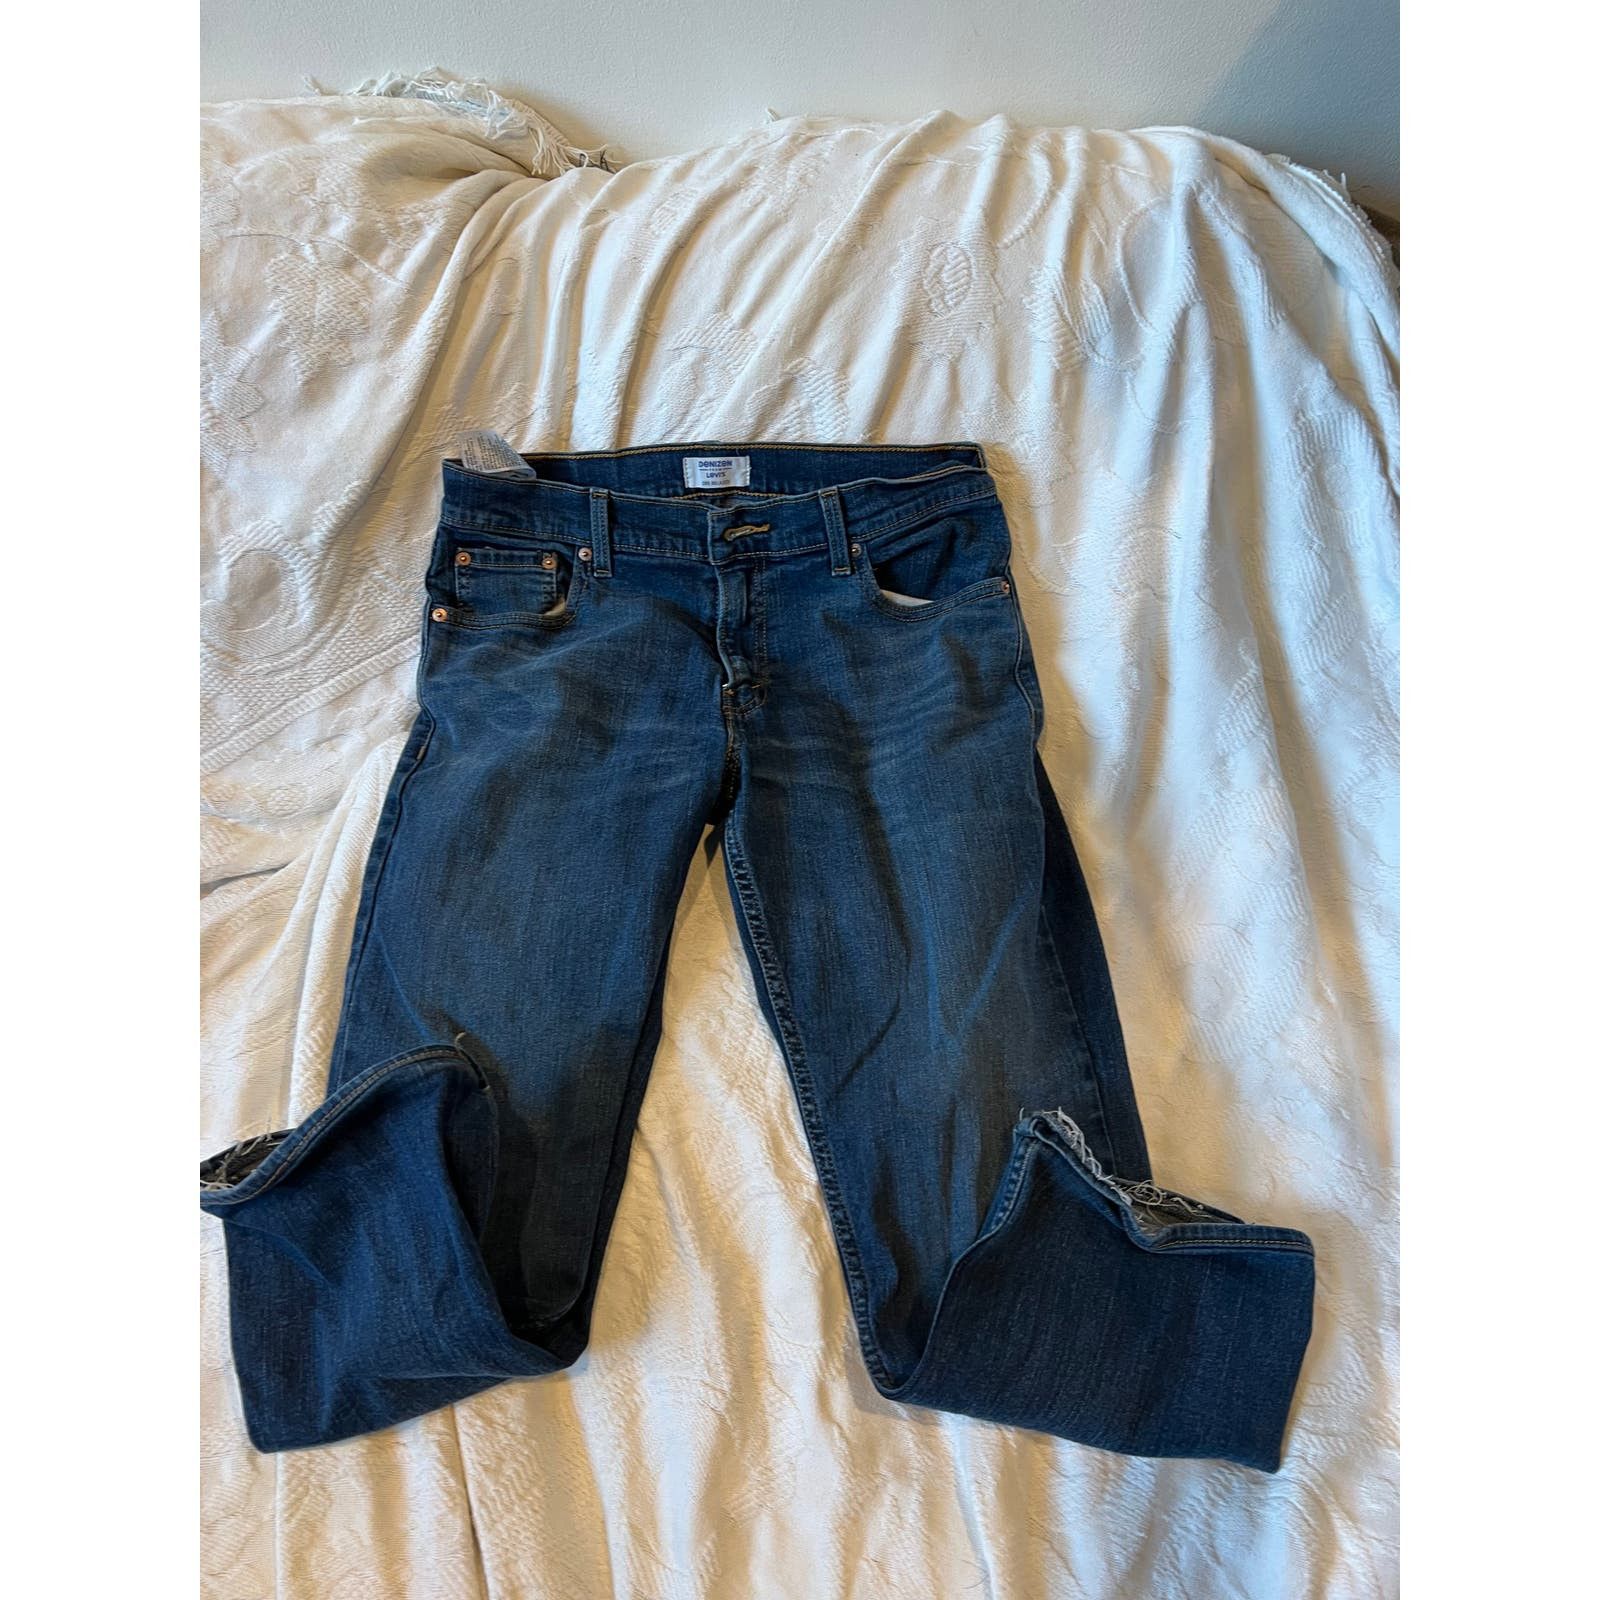 Levi's Levi's Denizen 285 Relaxed Fit Jeans Mens 32x32 Size US 32 / EU 48 - 4 Thumbnail